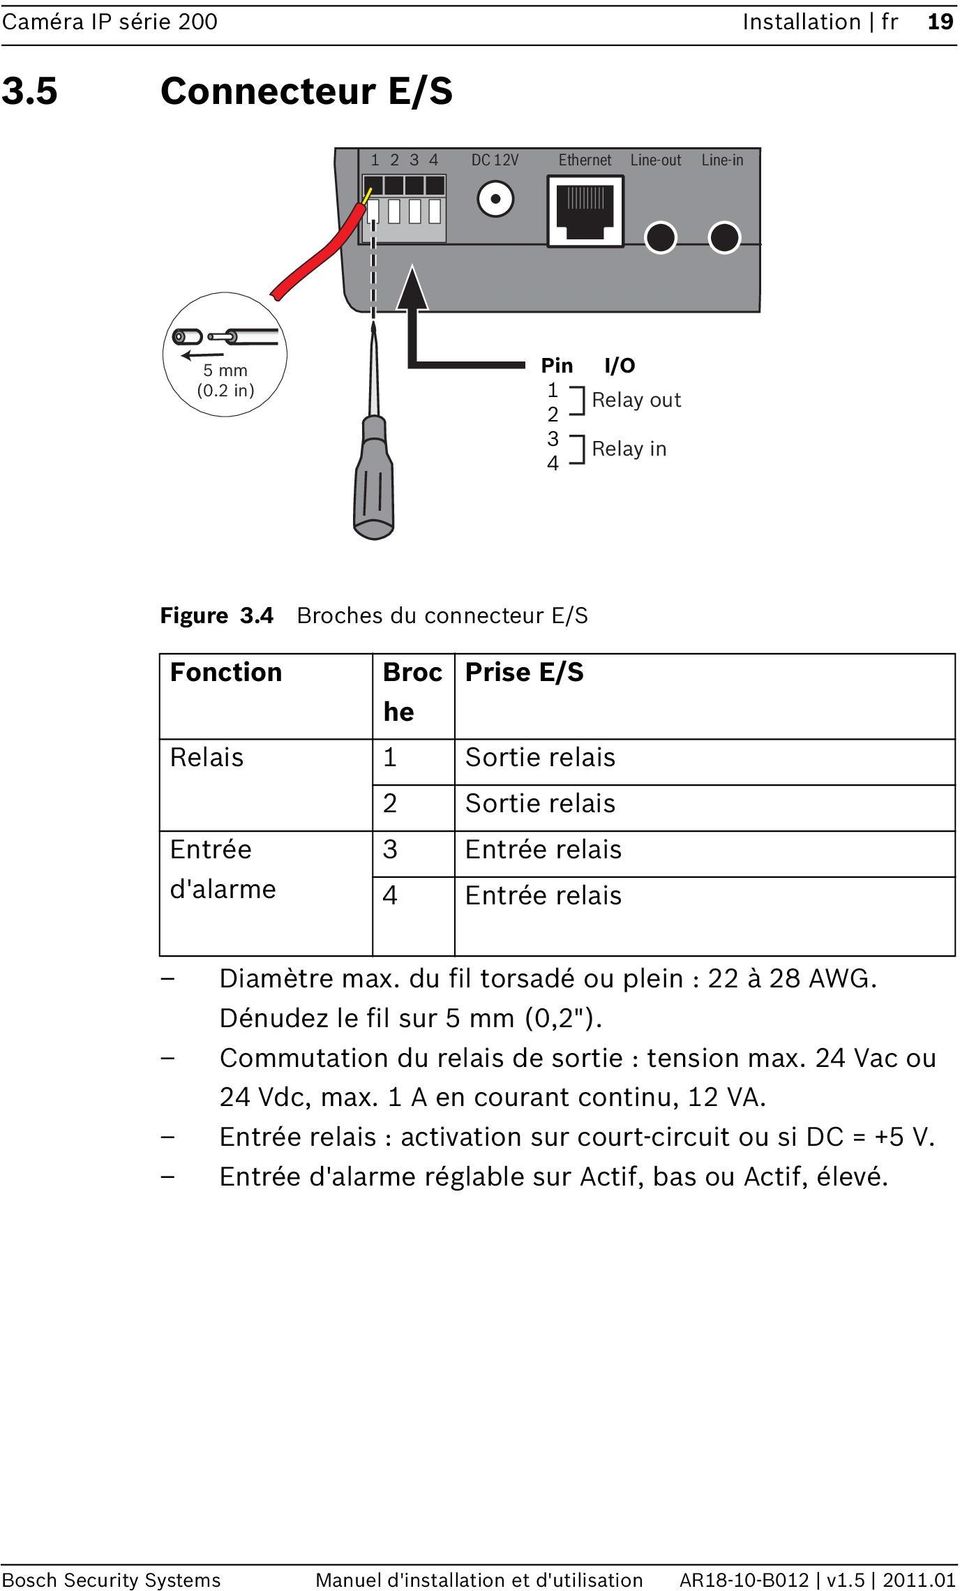 du fil torsadé ou plein : 22 à 28 AWG. Dénudez le fil sur 5 mm (0,2"). Commutation du relais de sortie : tension max. 24 Vac ou 24 Vdc, max. 1 A en courant continu, 12 VA.